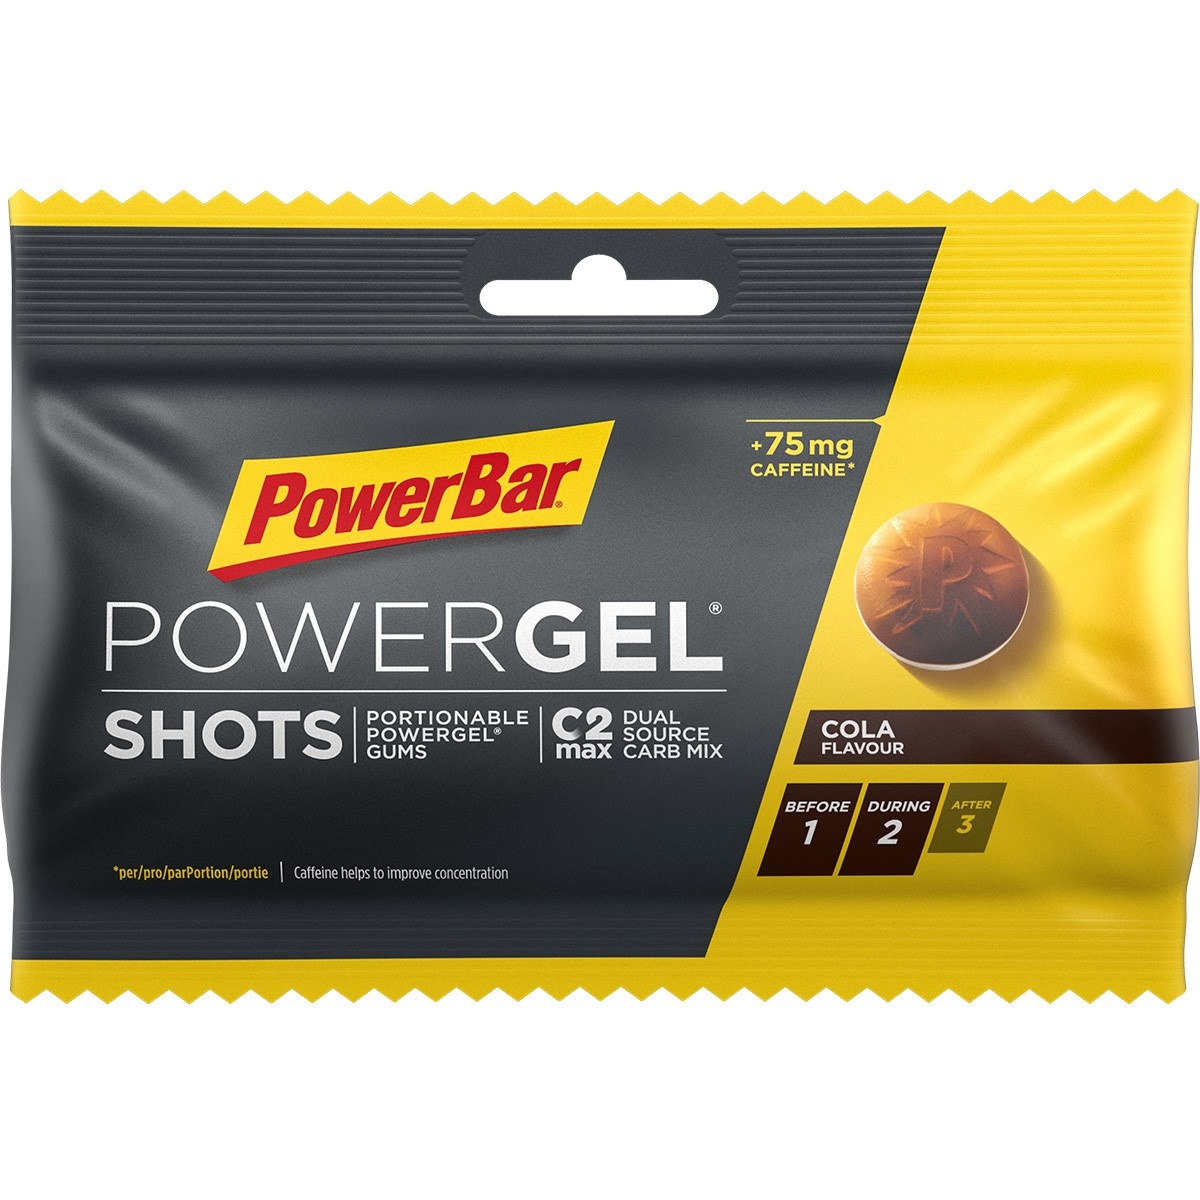 Billede af PowerBar PowerGel shots - Vingummi - Cola & Koffein